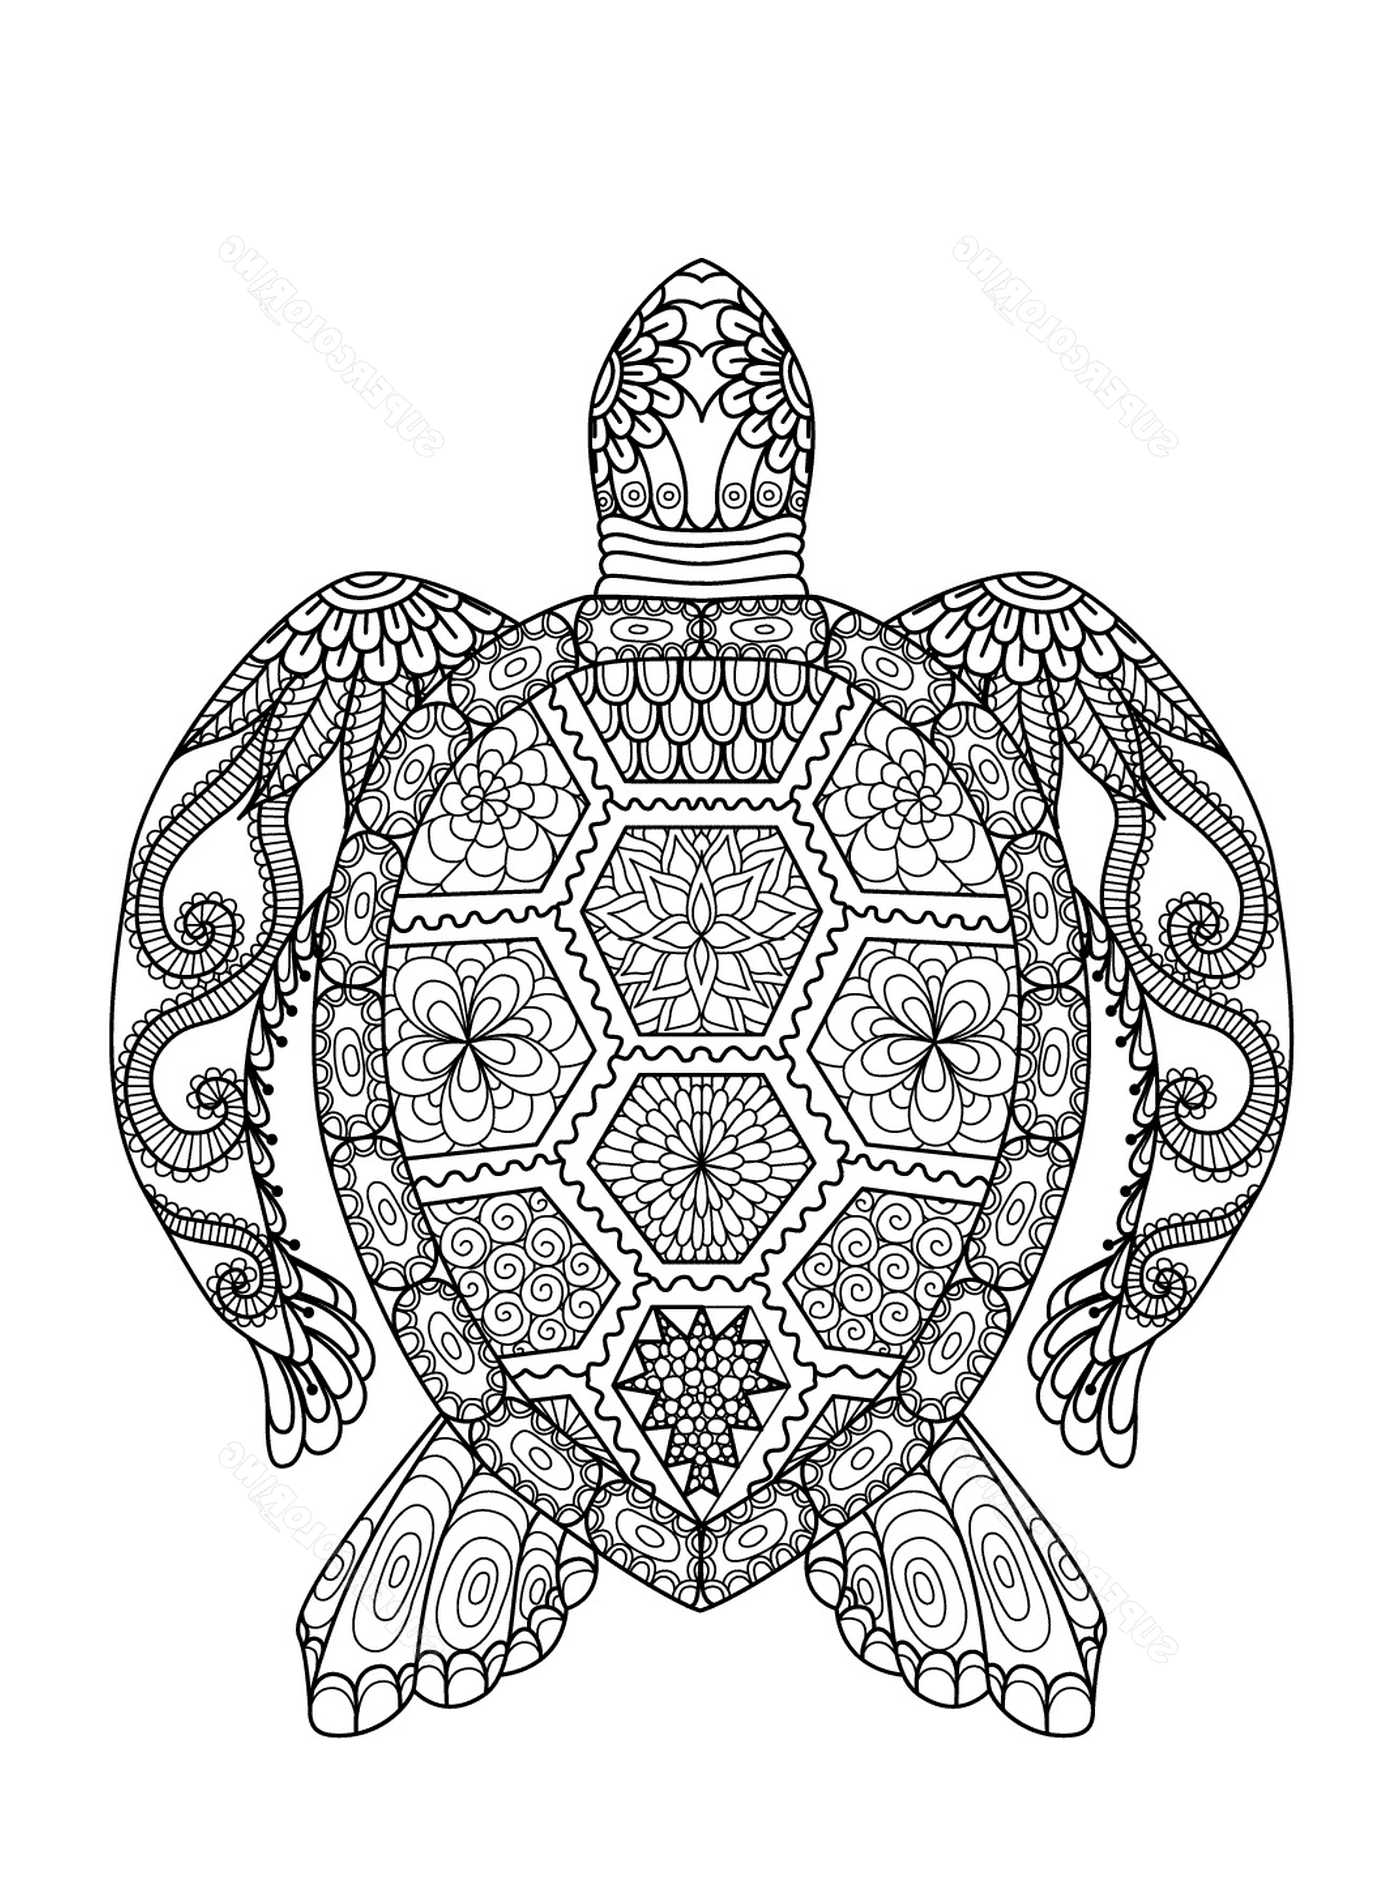  Морская черепаха с изощренными образцами 